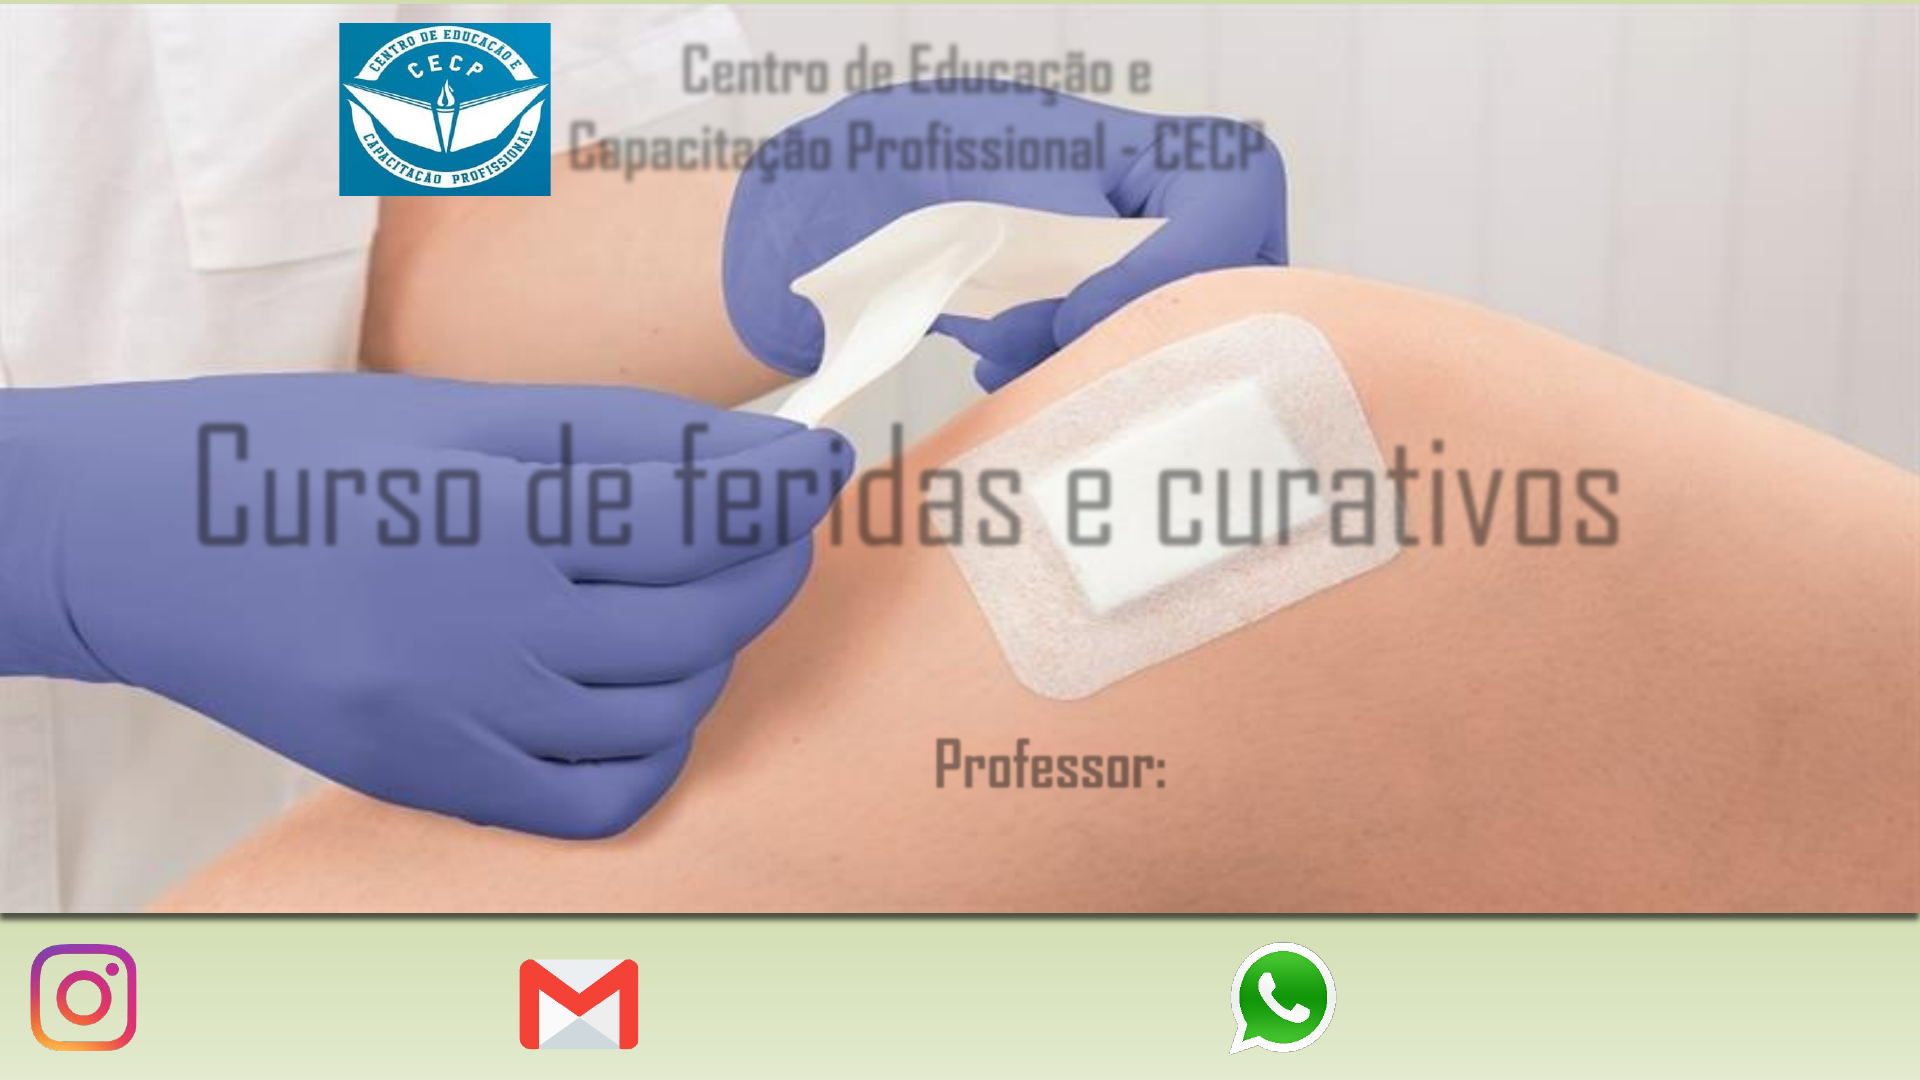 Certificado cuativos,feridas e lesoes - Farmacologia - SeteCertificados.com  - Studocu